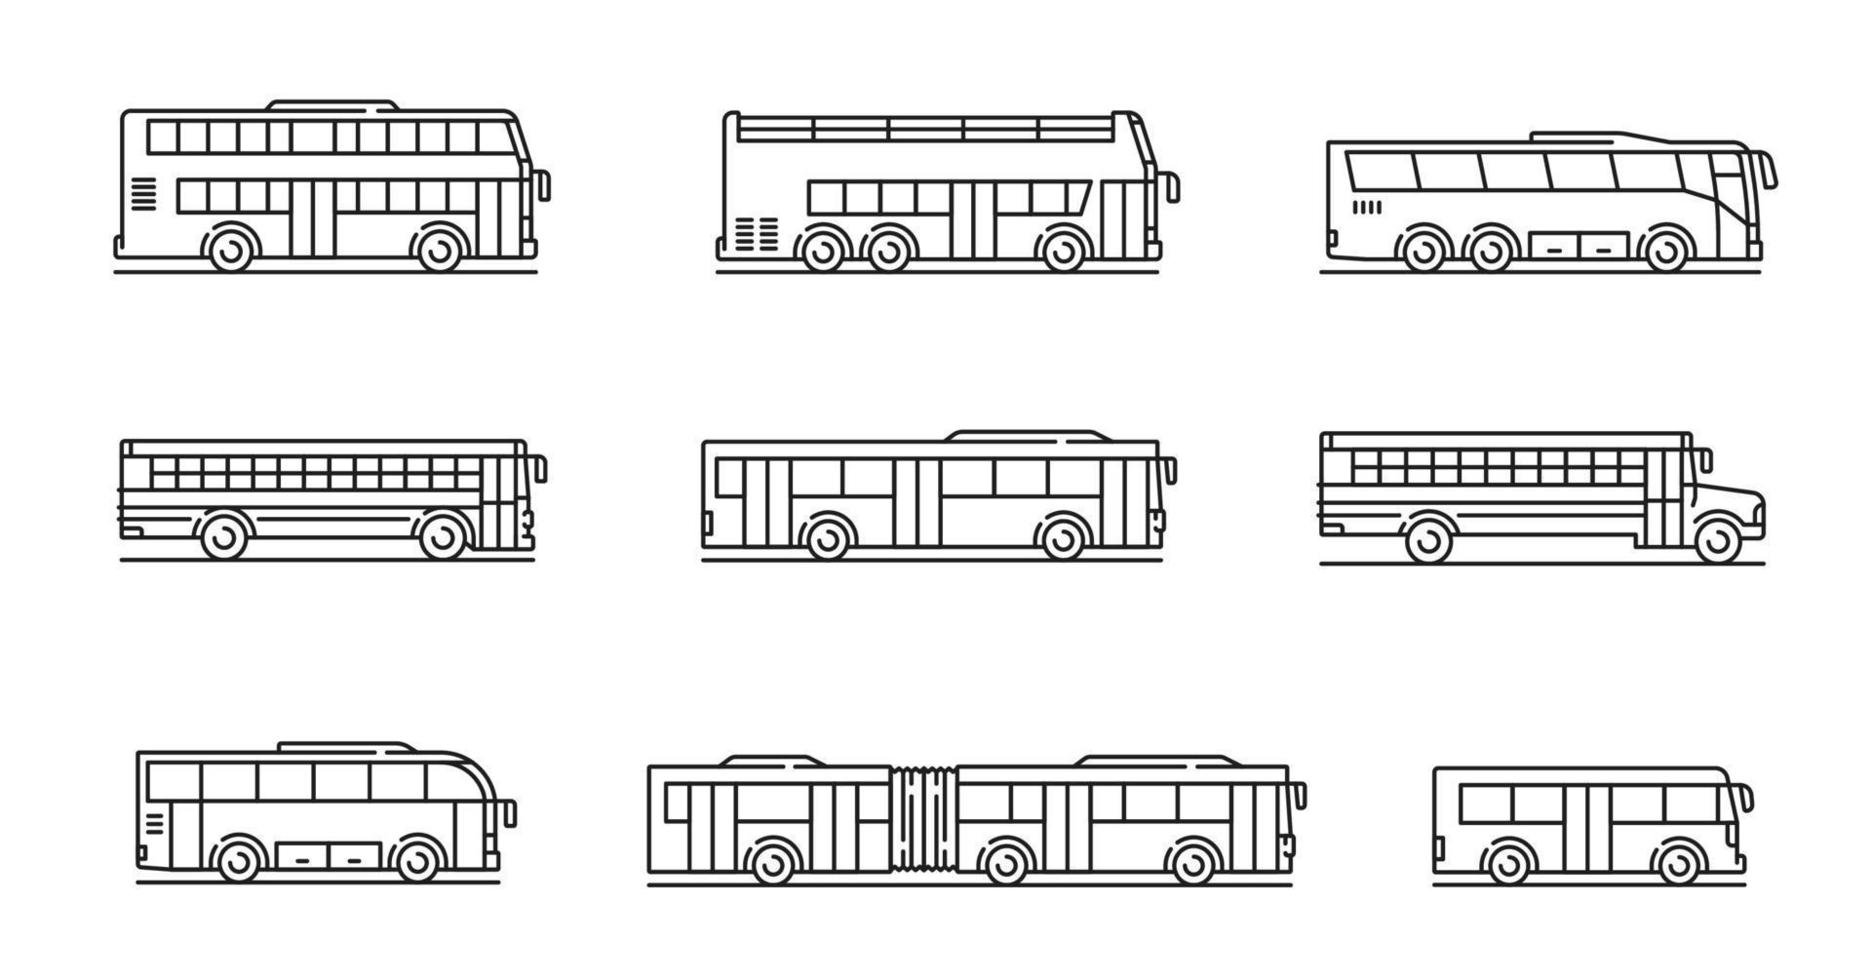 iconos de transporte urbano, viajes y autobuses escolares vector